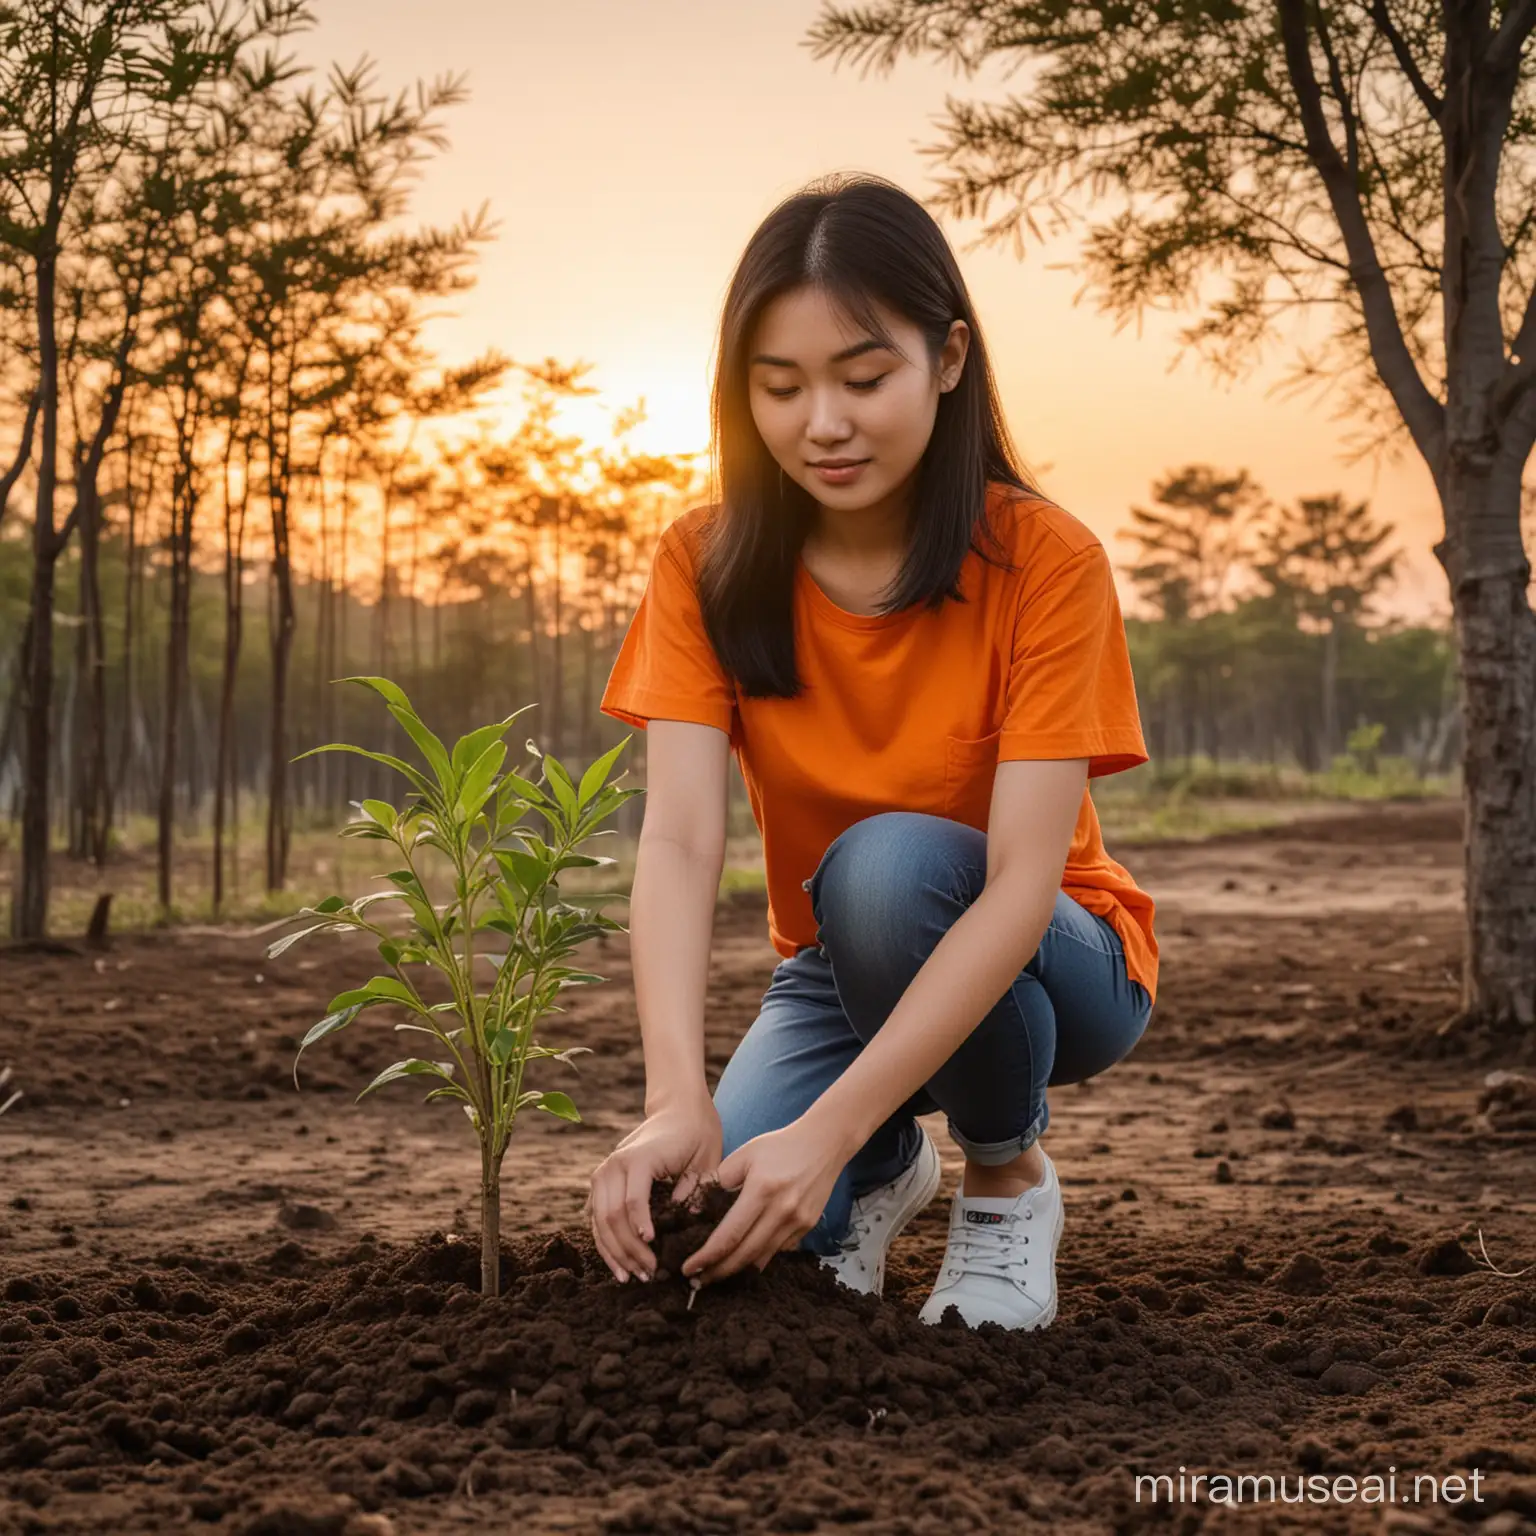 thiết kế cho tôi một cô gái
châu á mặc áo màu cam, đang trồng cây, trong buổi chiều hoàng hôn